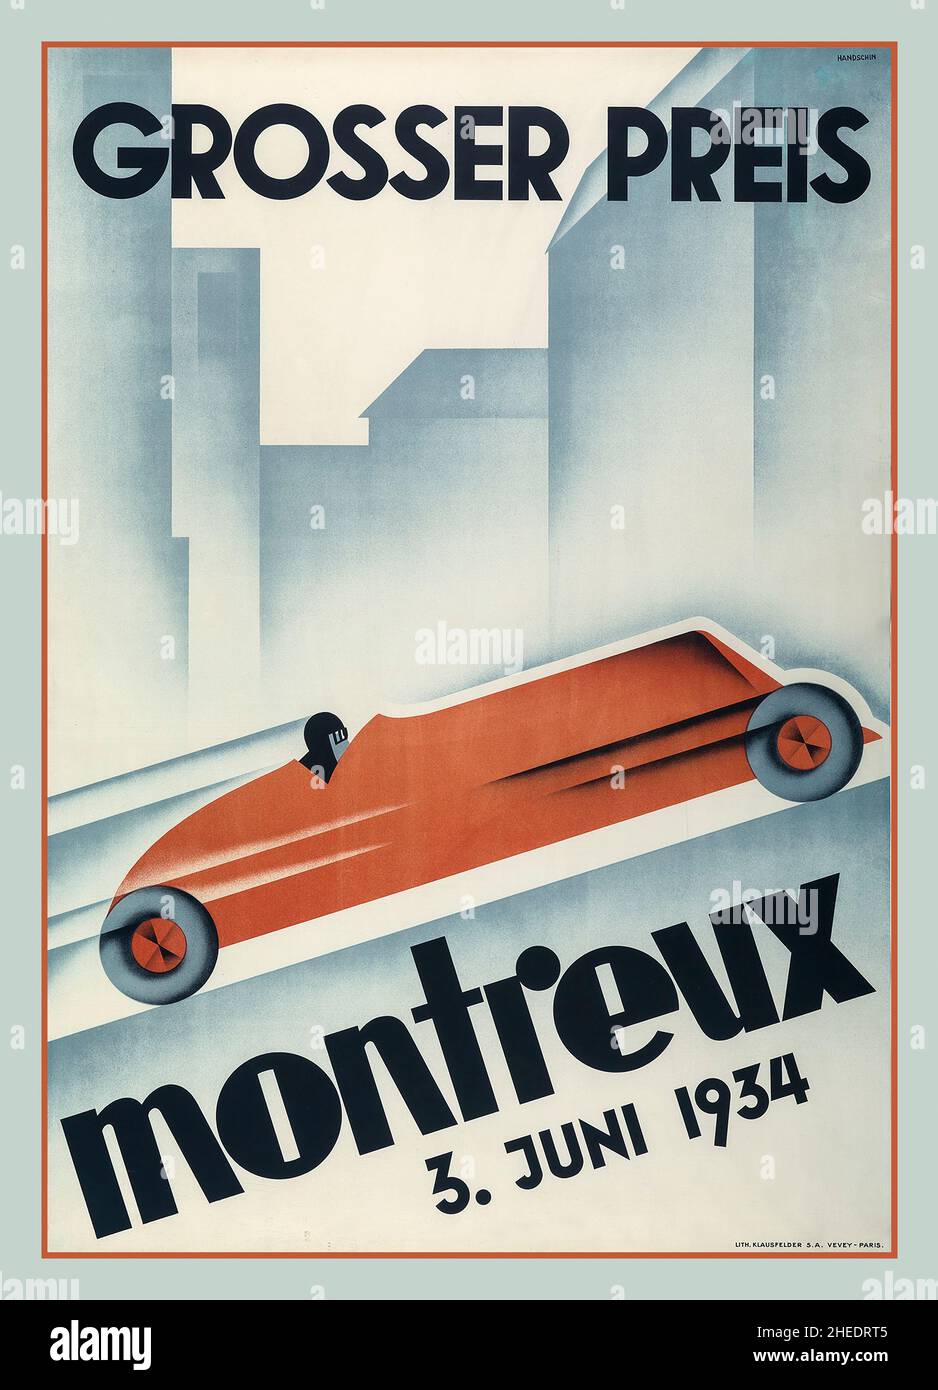 1934 Suisse Montreux Grand Prix affiche de course Antique 1934 affiche de course faisant la promotion de la course automobile du Grand Prix de Montreux en Suisse.La course a eu lieu cinq fois entre 1924 et 1937. Banque D'Images